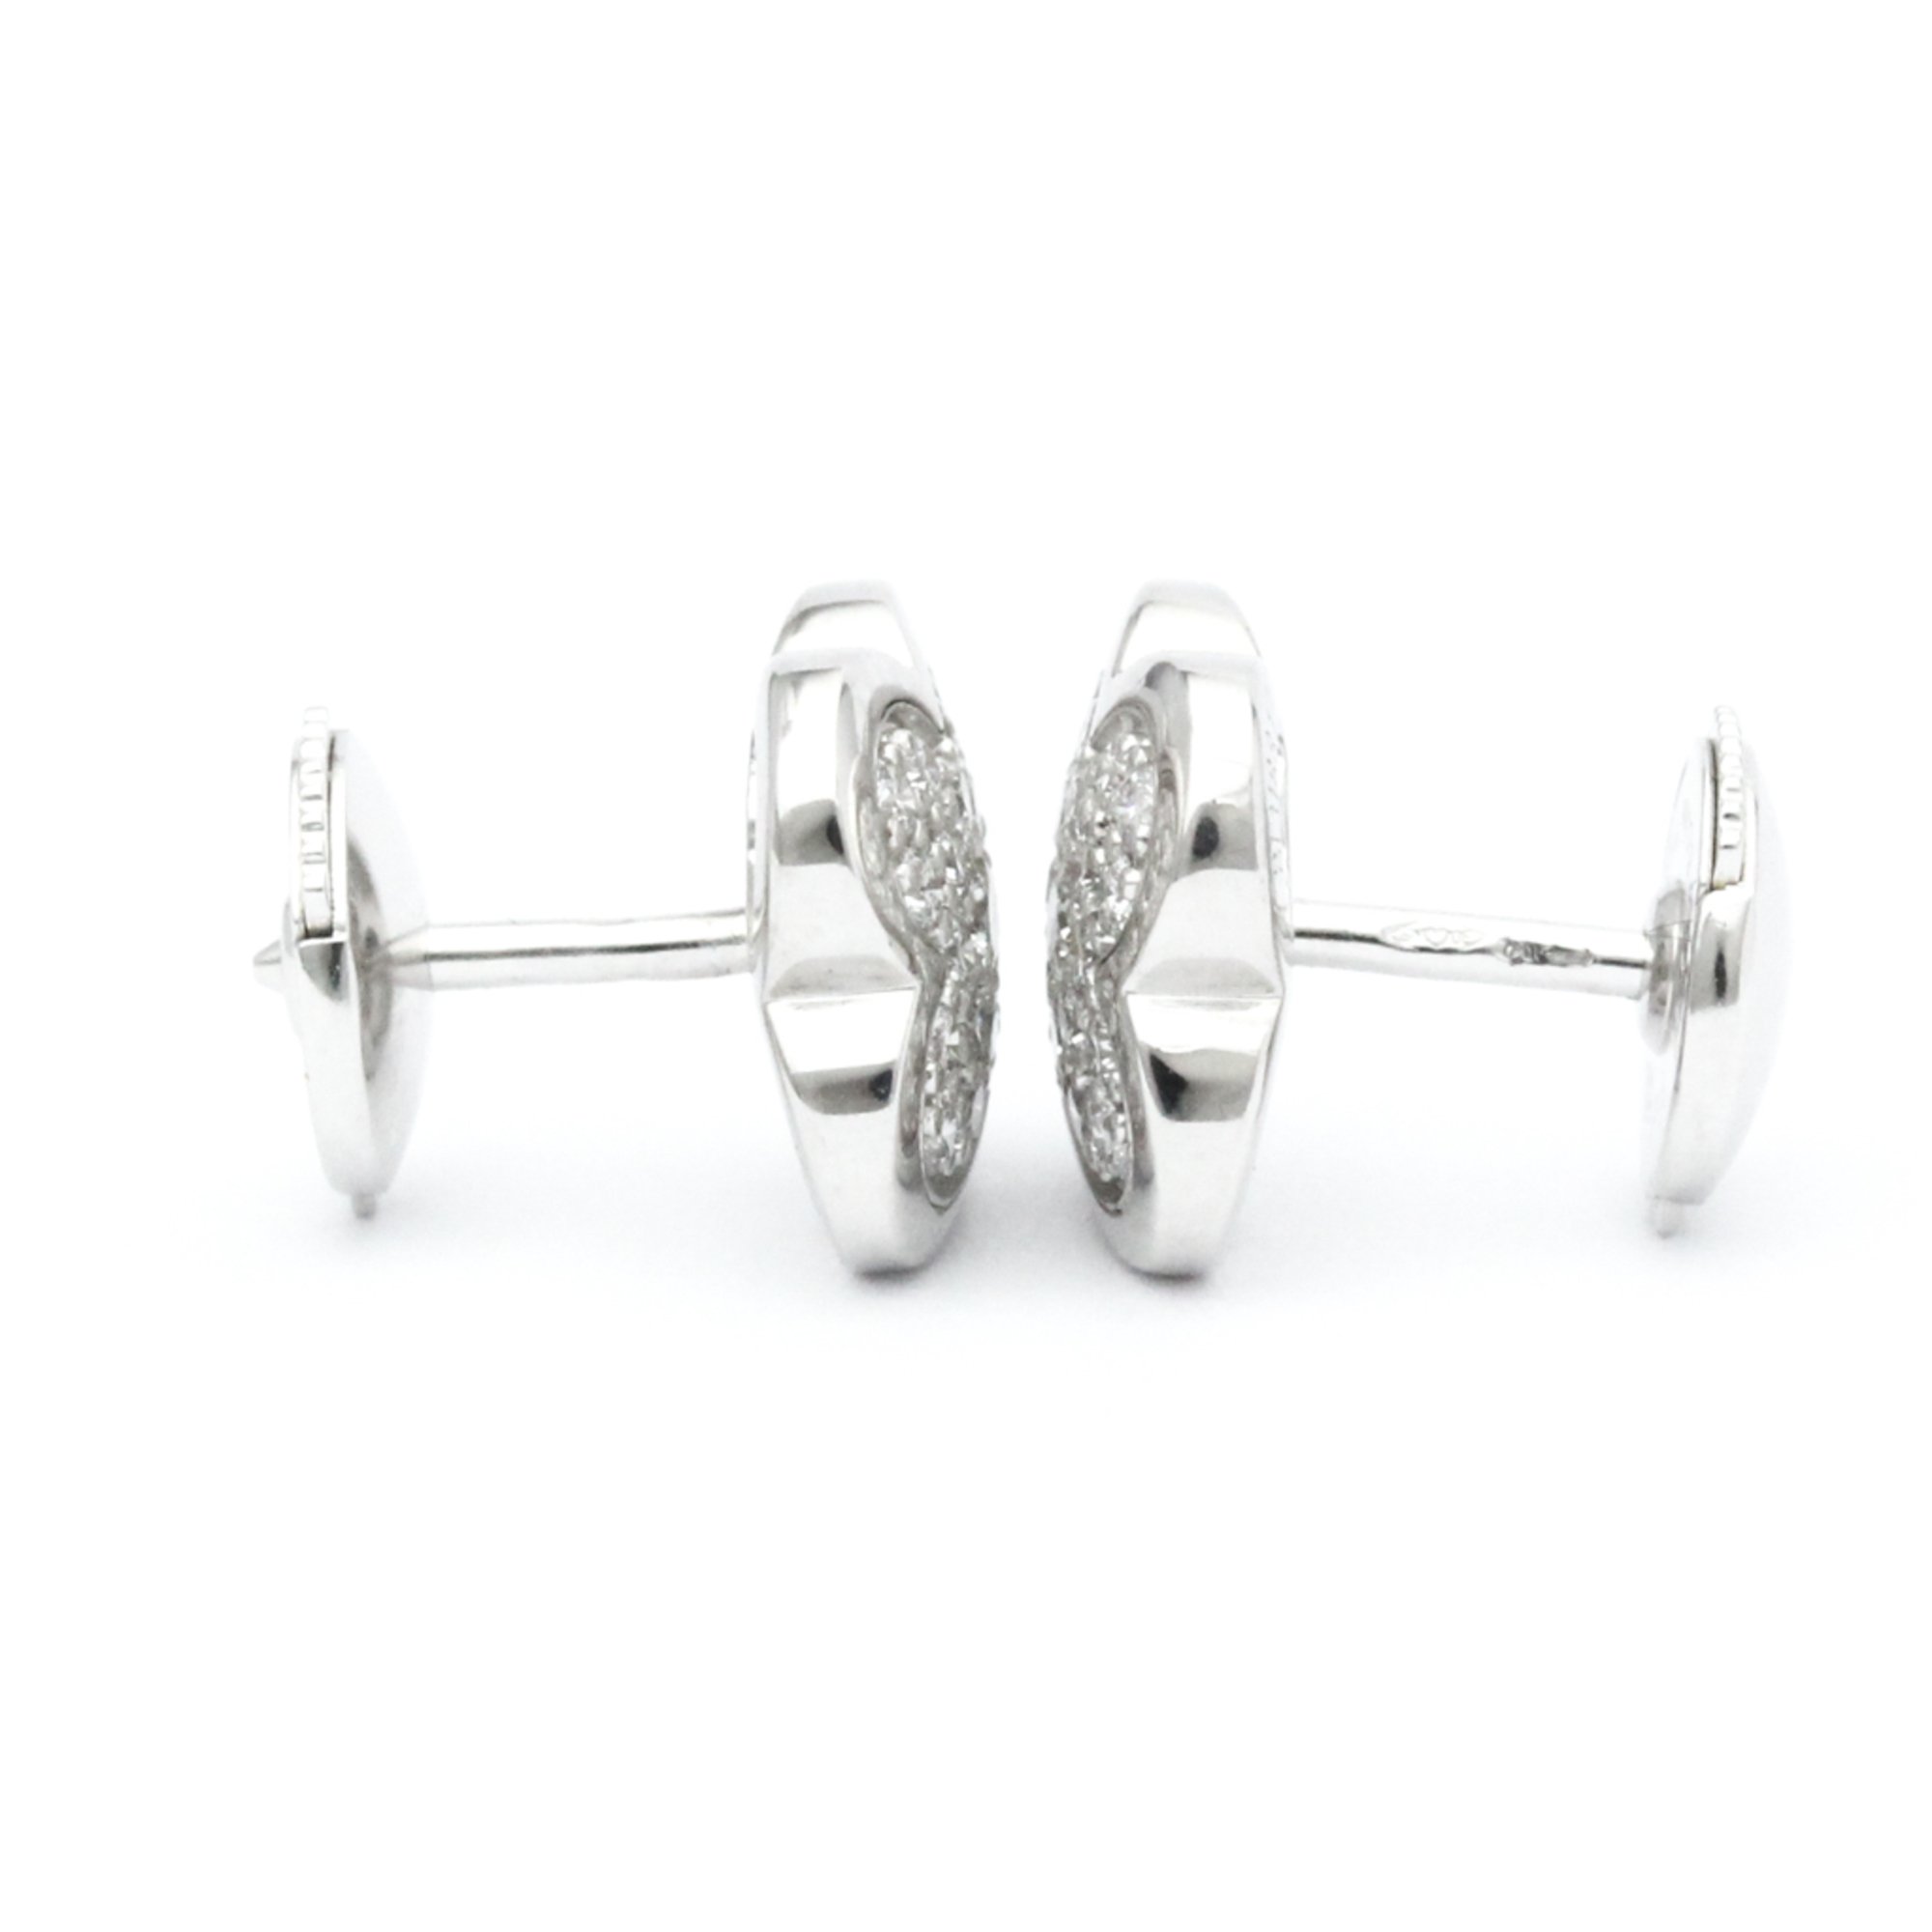 Van Cleef & Arpels Pure Alhambra Earrings Diamond White Gold (18K) Stud Earrings Silver